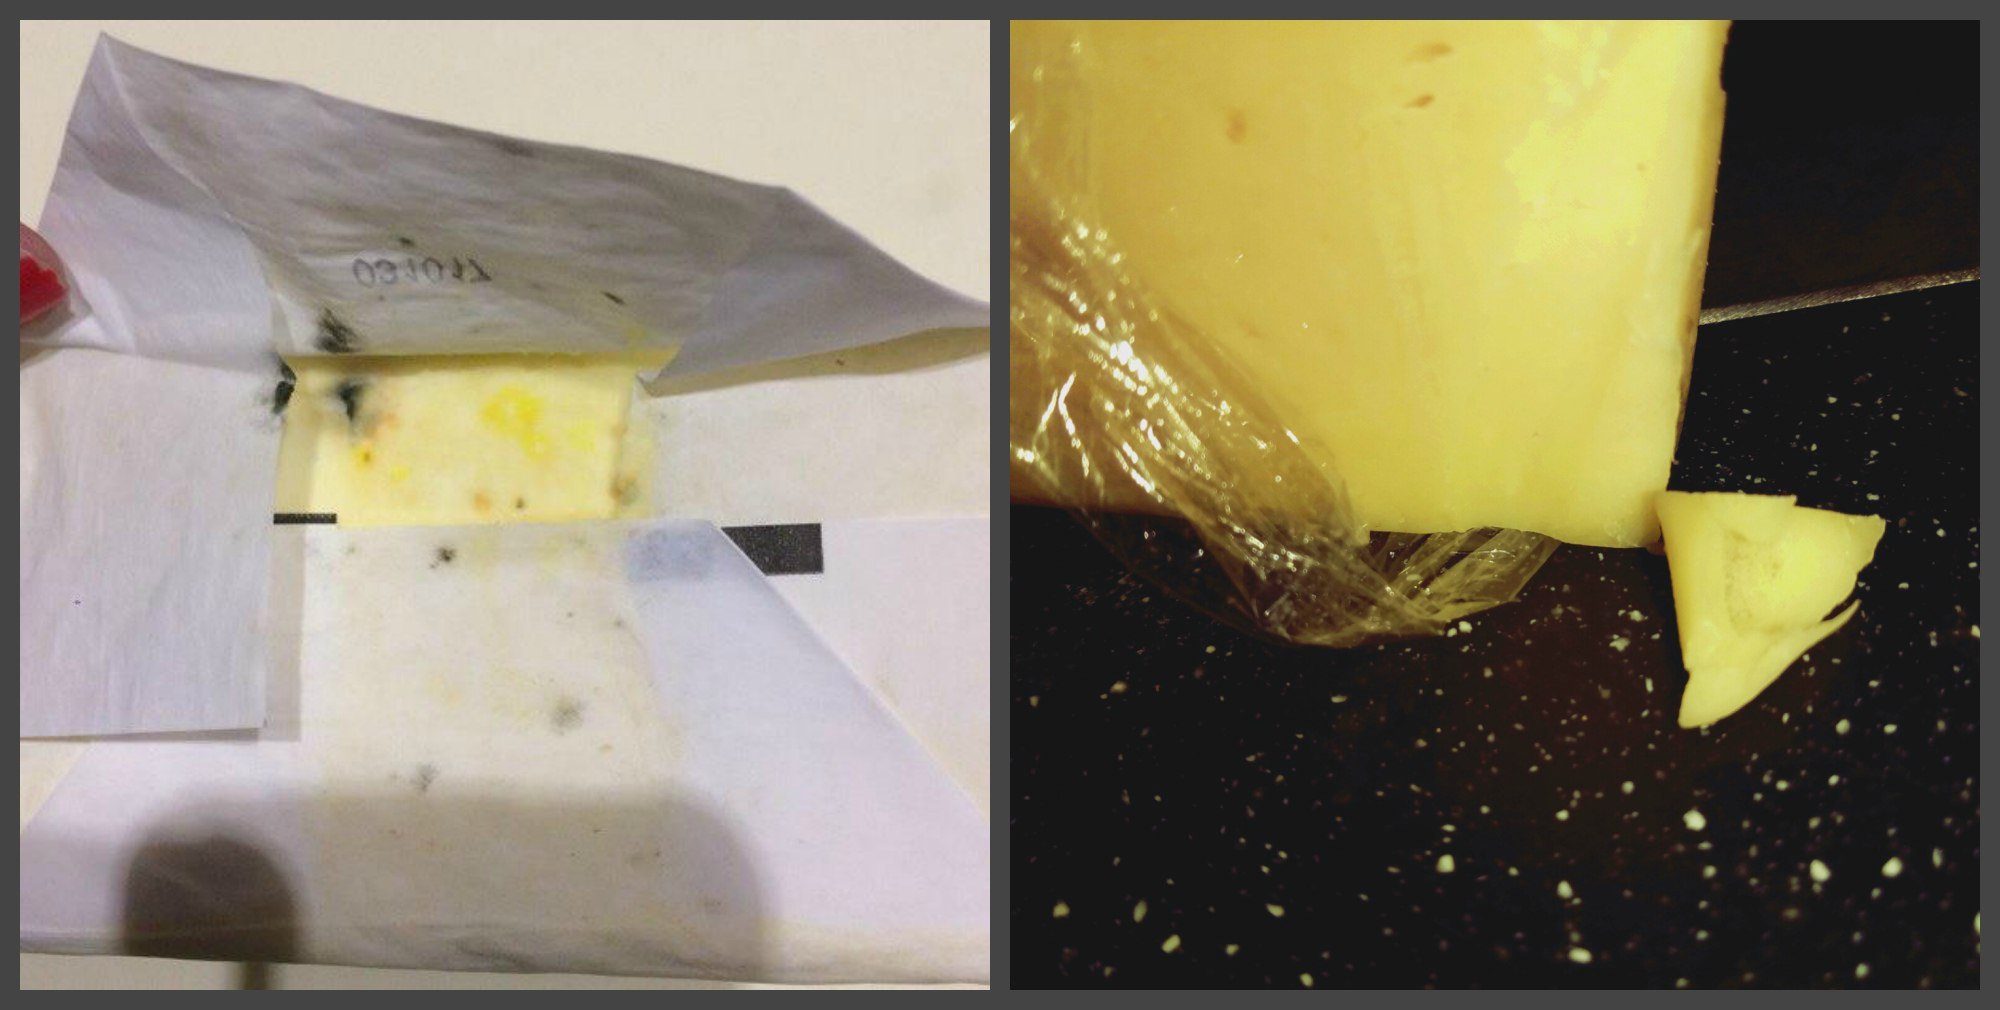 Масло с плесенью и сыр с волосами: какие некачественные продукты попадаются чепчанам